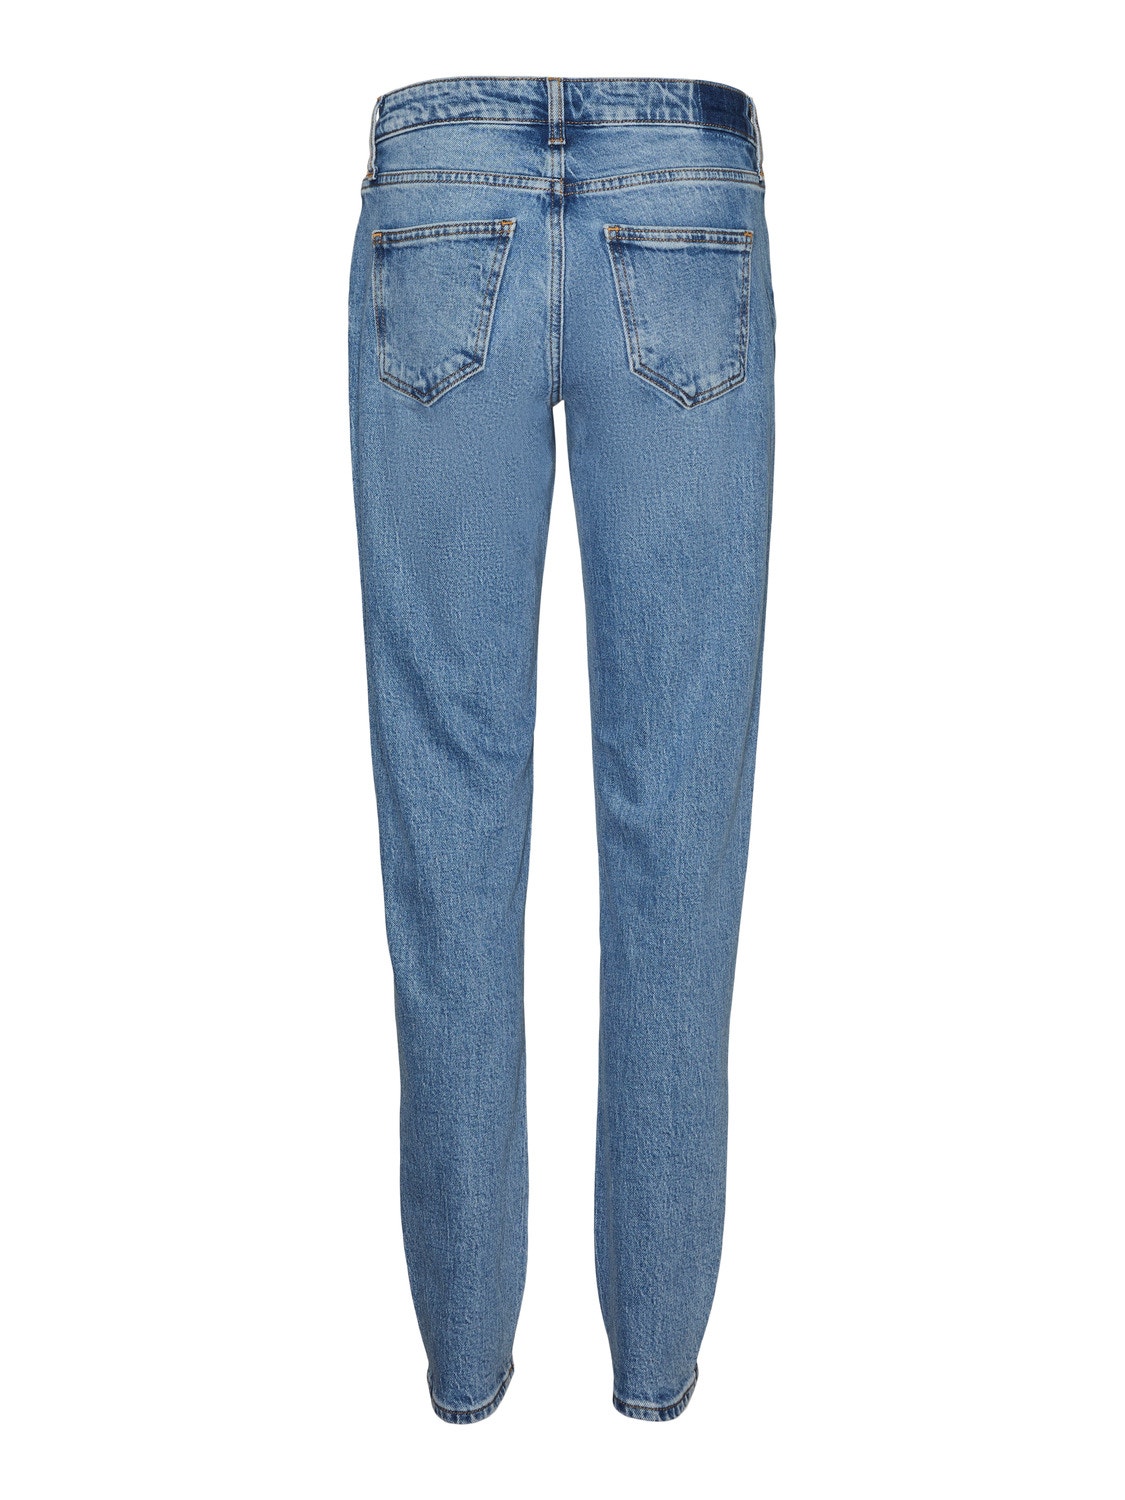 Vero Moda VMMARRY Vita bassa Mom Fit Jeans -Medium Blue Denim - 10307238